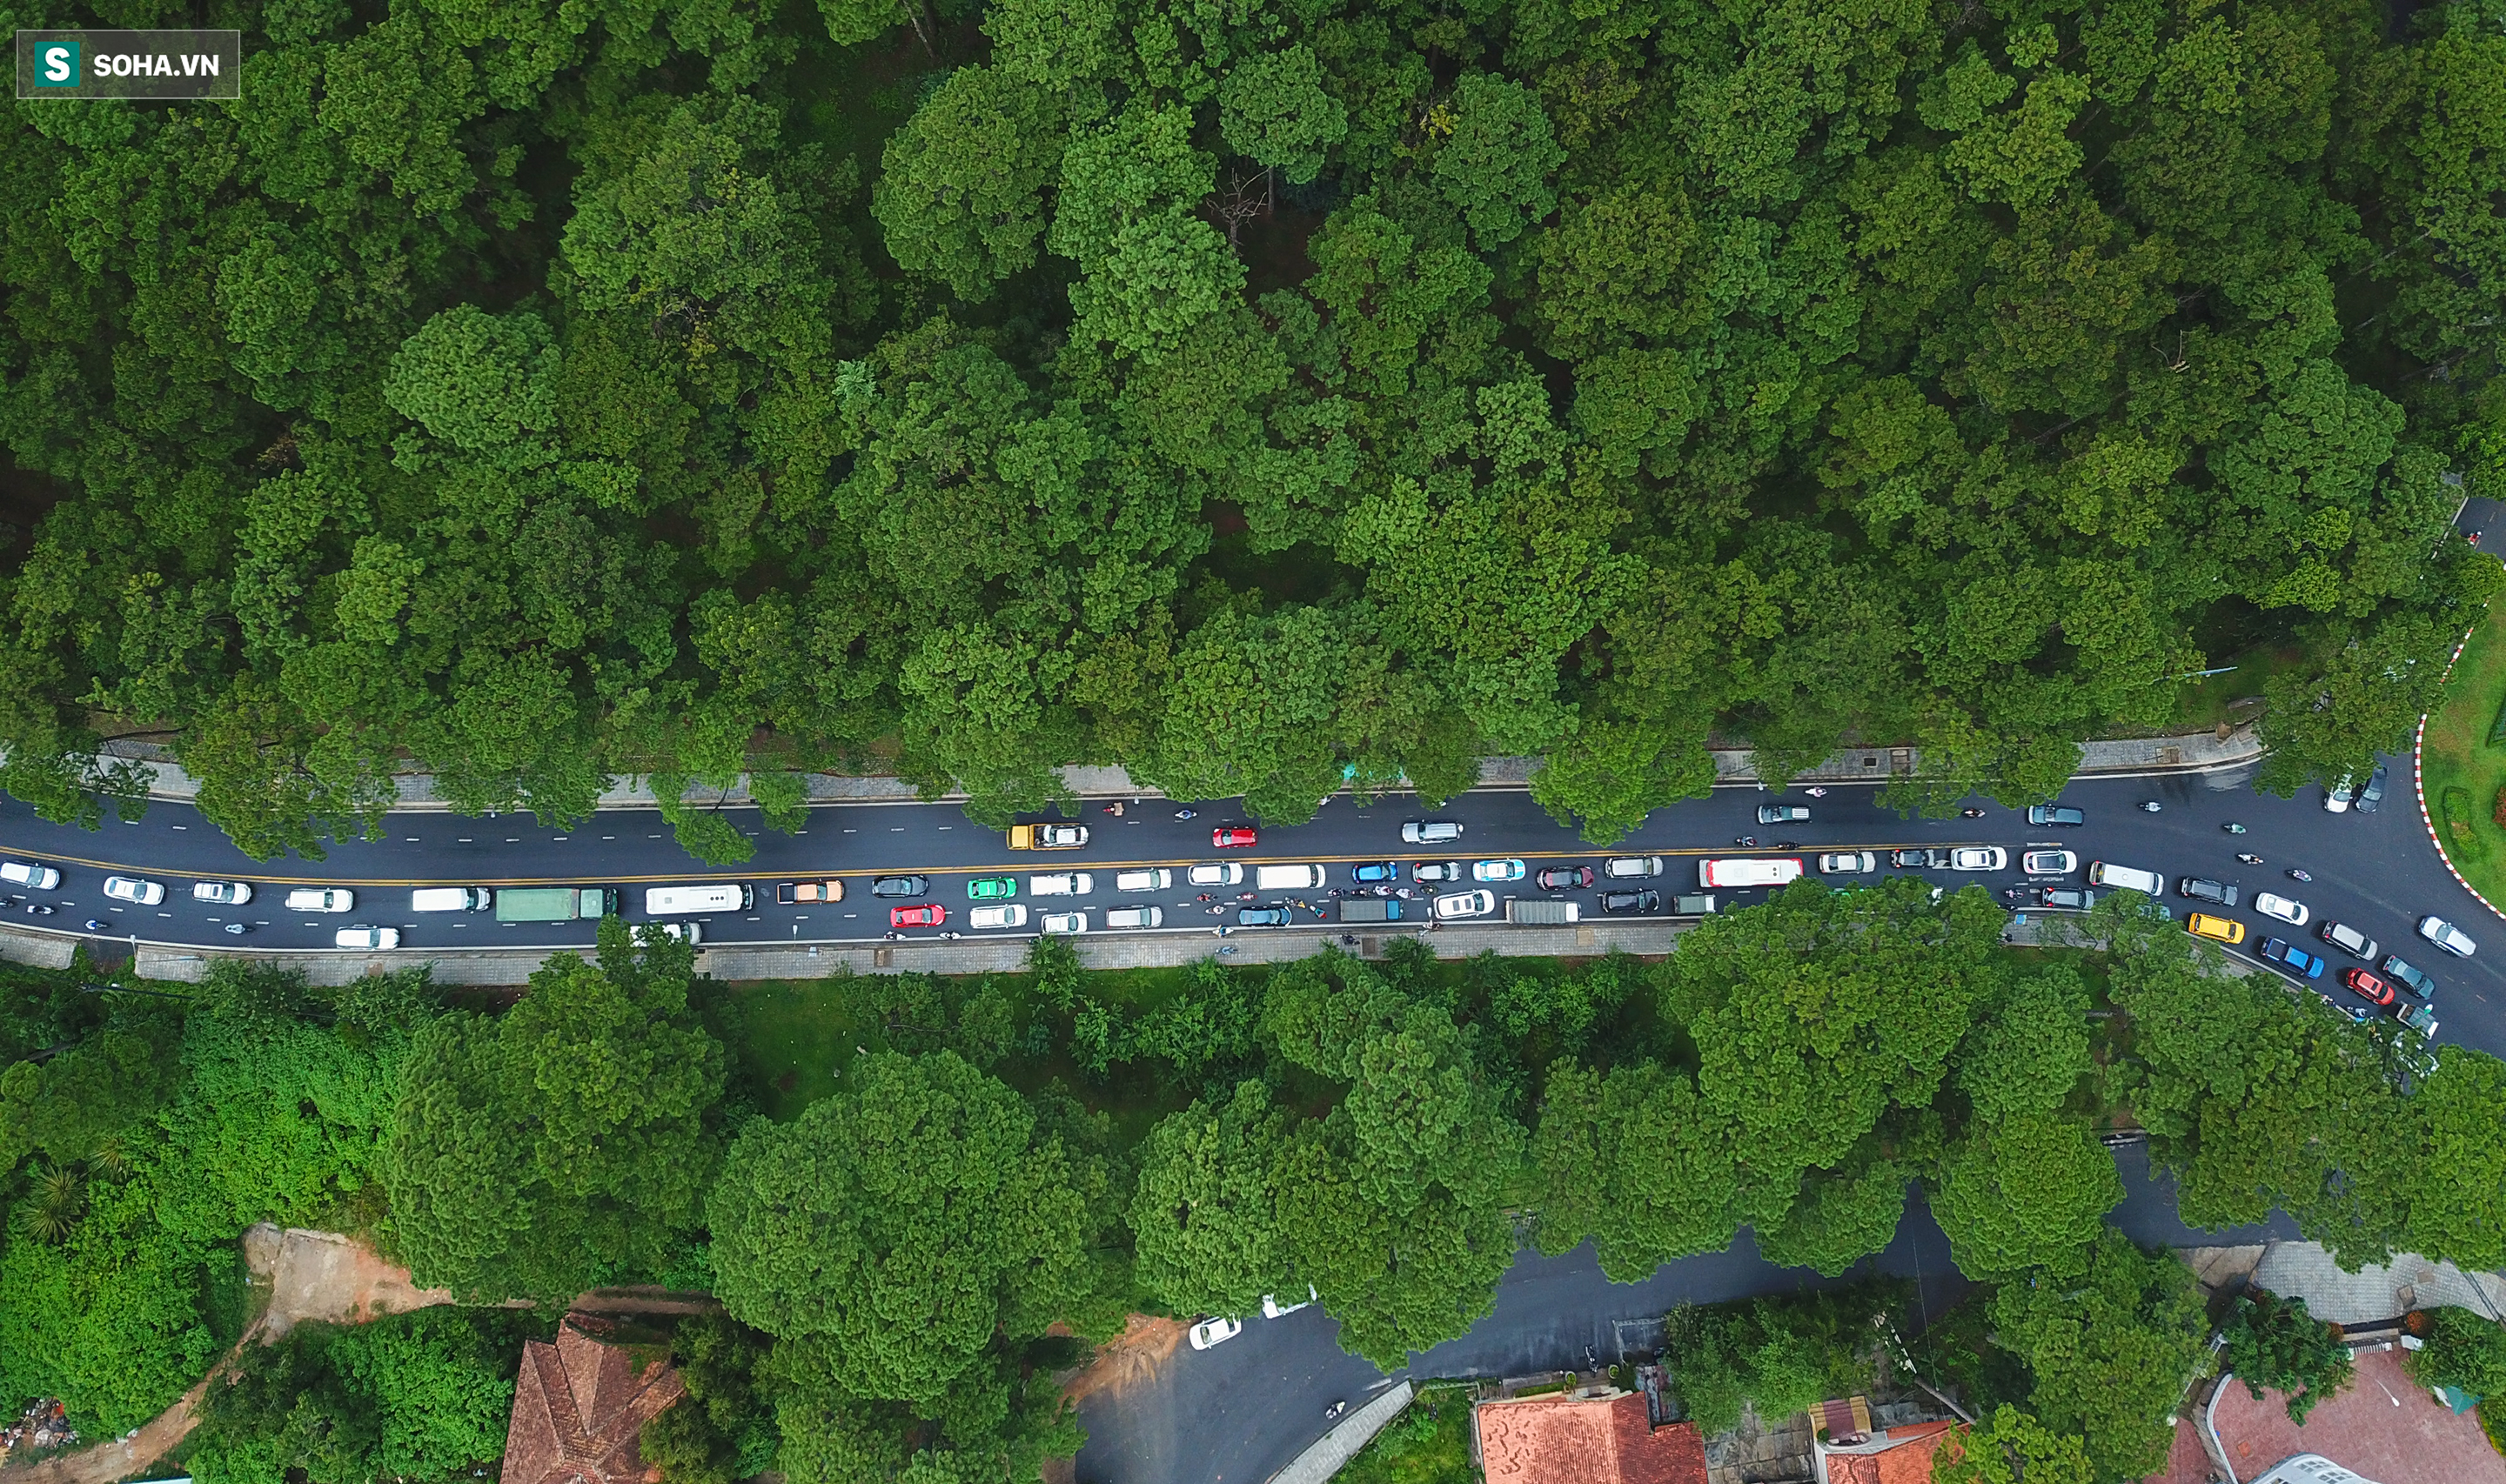 Cửa ngõ Đà Lạt ùn tắc kéo dài, hàng trăm ôtô nhúc nhích từng chút trong cơn mưa chiều - Ảnh 7.